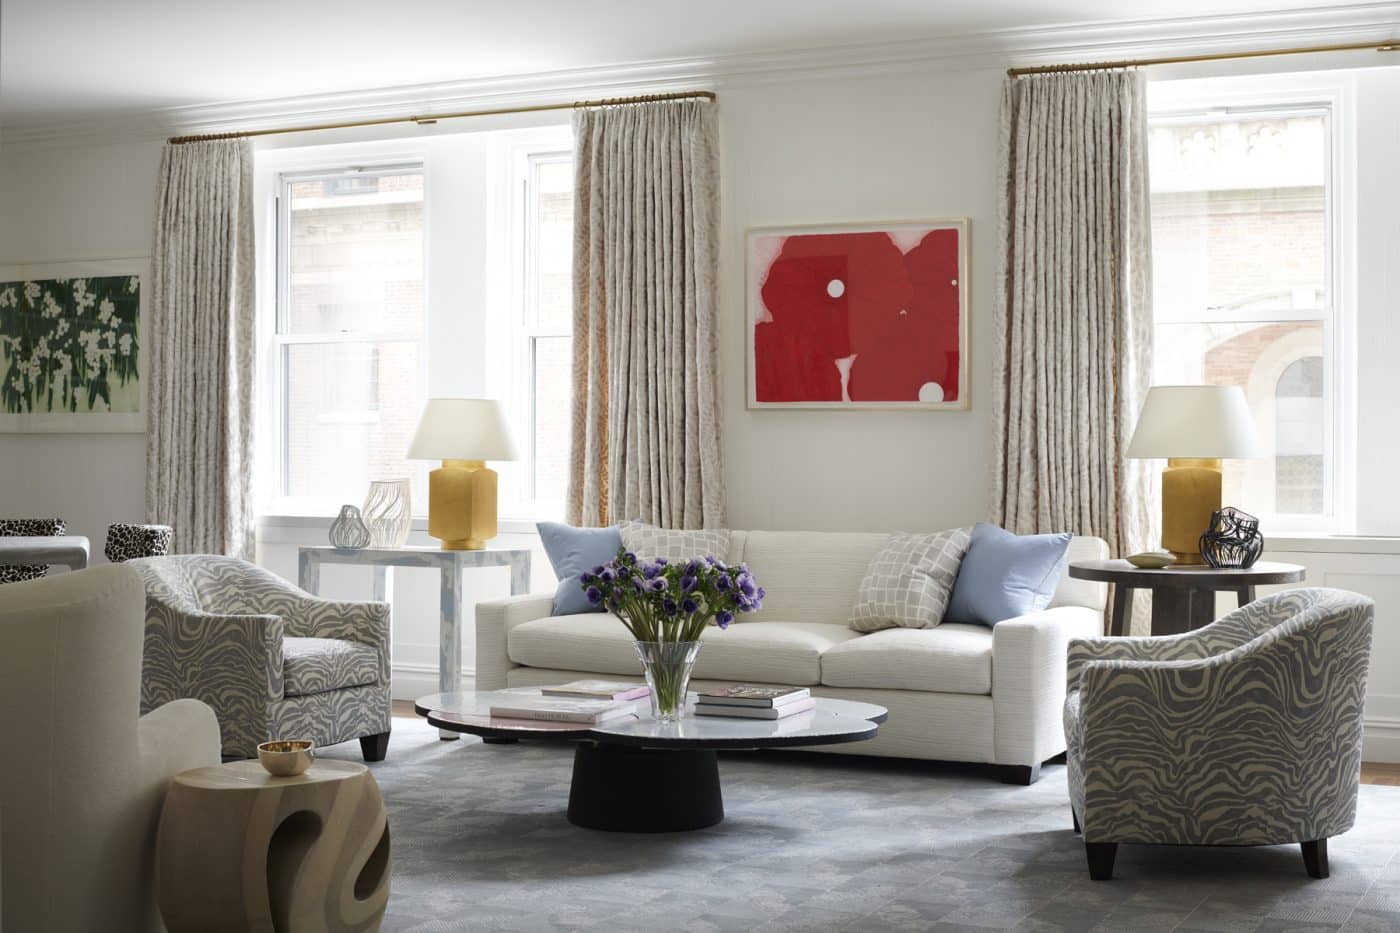 Stewart Manger living room in Park Avenue apartment New York